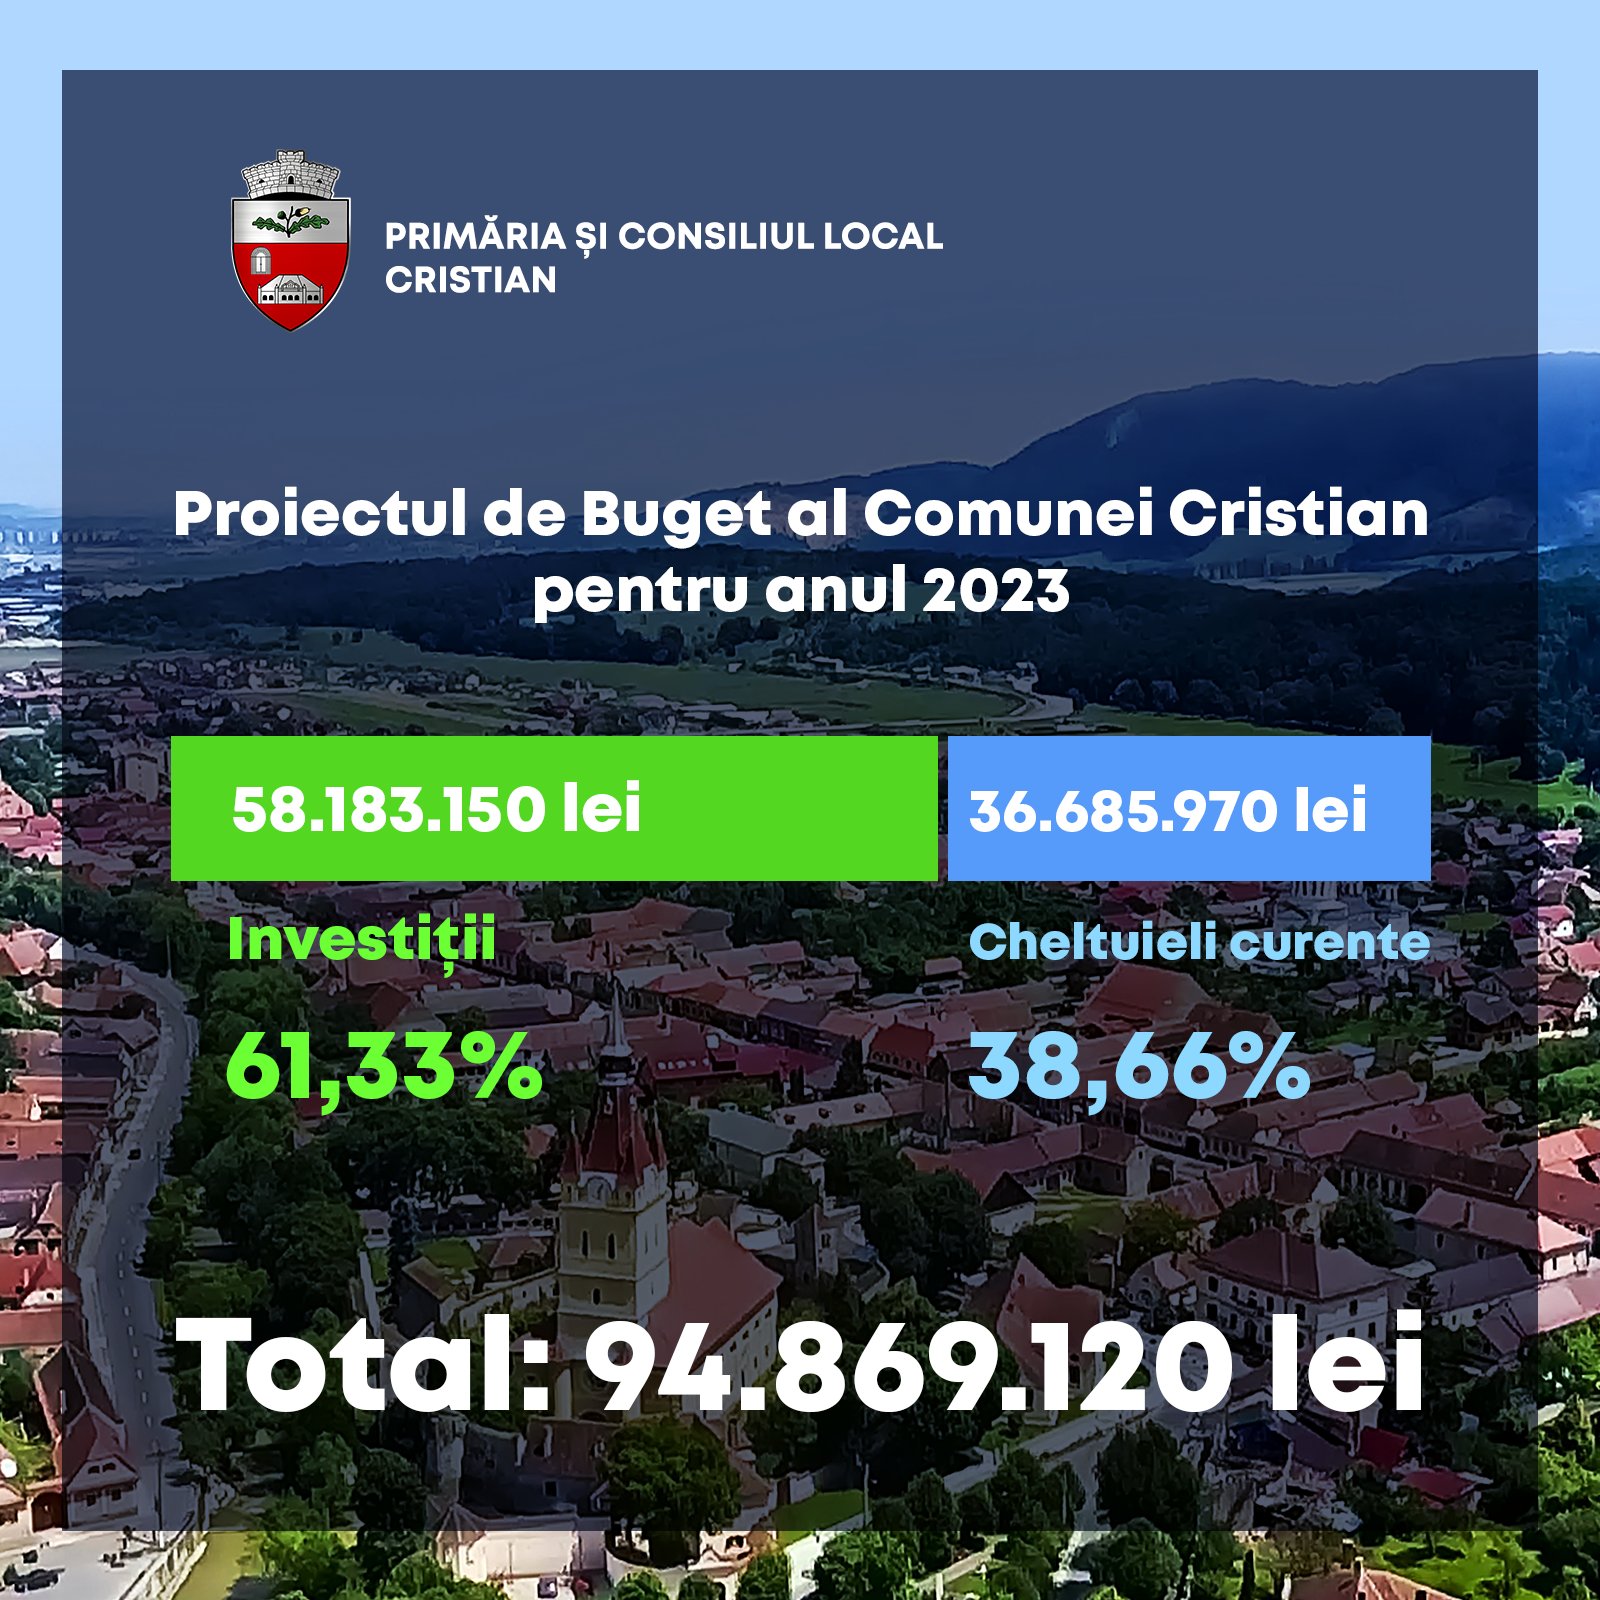 Brașov Comuna Cristian alocă peste 58 de milioane lei la bugetul pentru investiții în 2023